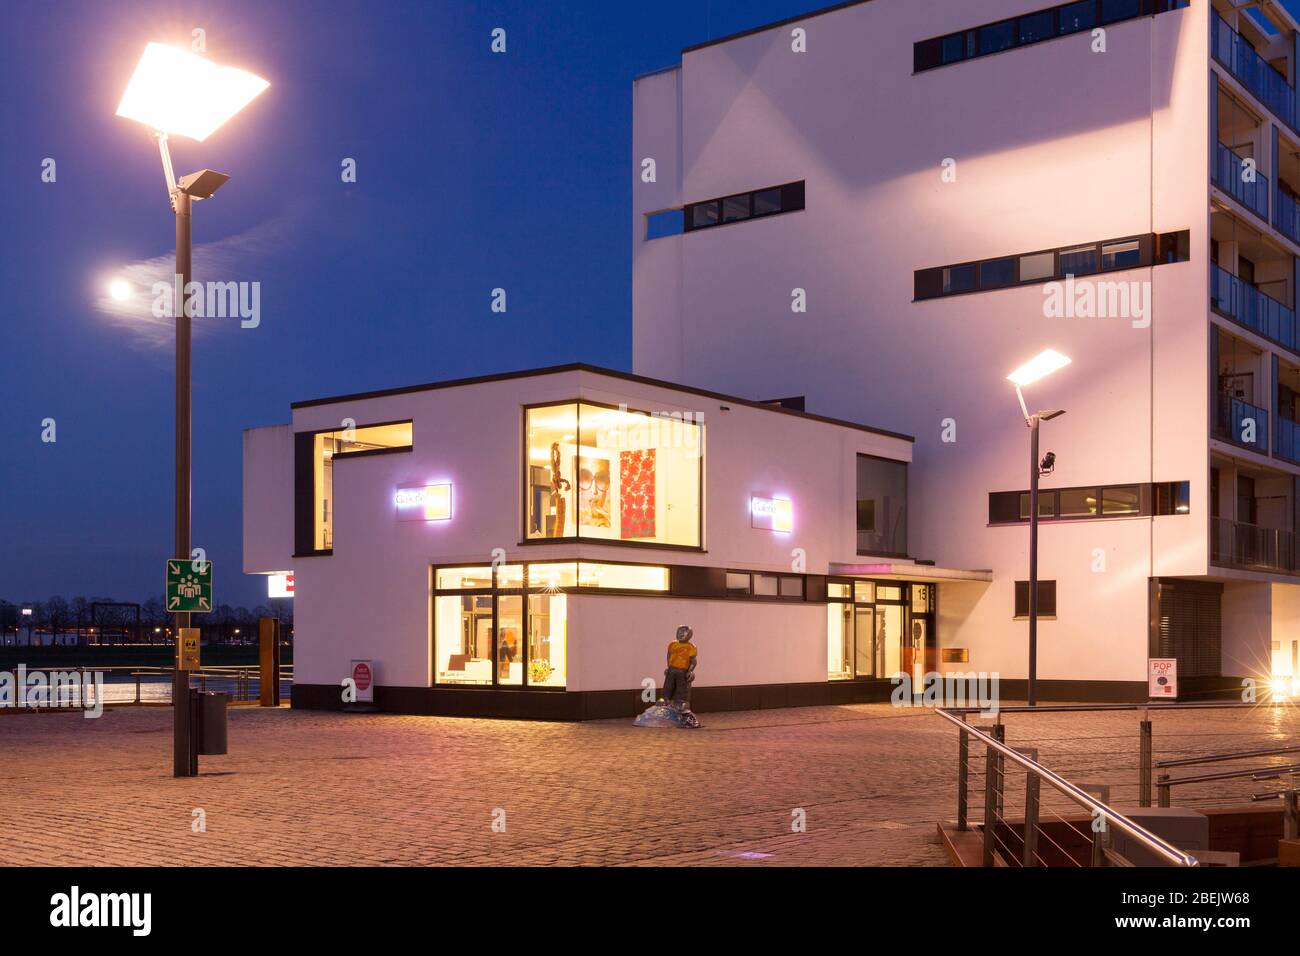 La galleria d'arte Reitz nel porto di Rheinau, Colonia, Germania. Die Kunstgalerie Reitz im Rheinauhafen, Koeln, Deutschland. Foto Stock